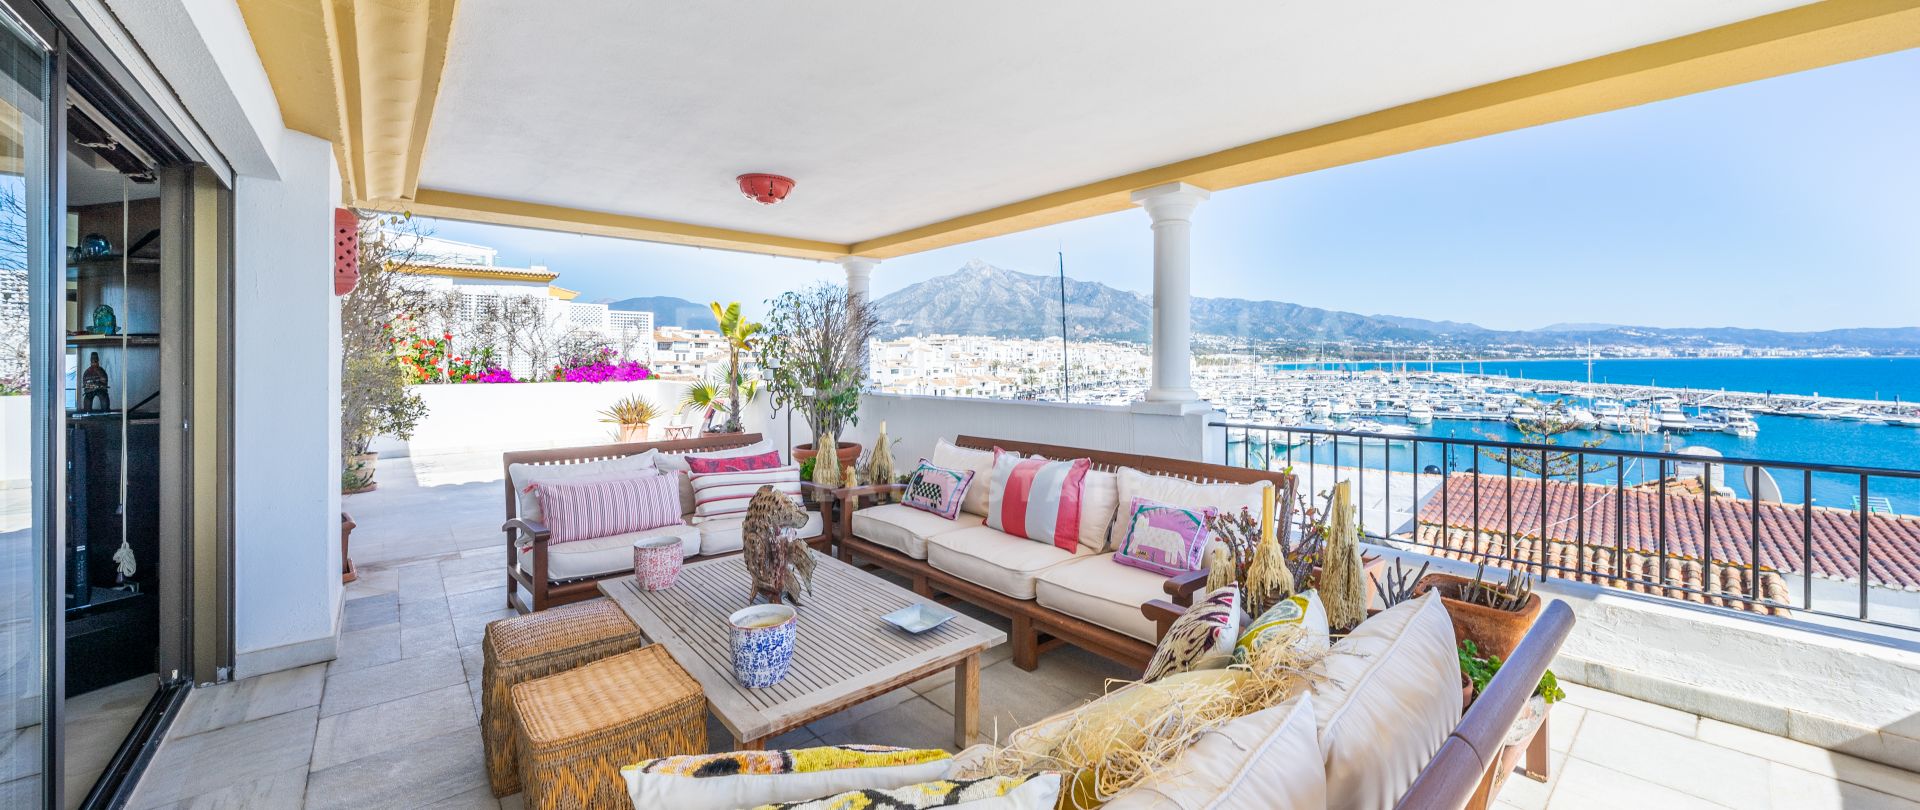 Superb lyxig Duplex Penthouse vid stranden i fantastiska Puerto Banus, Marbella